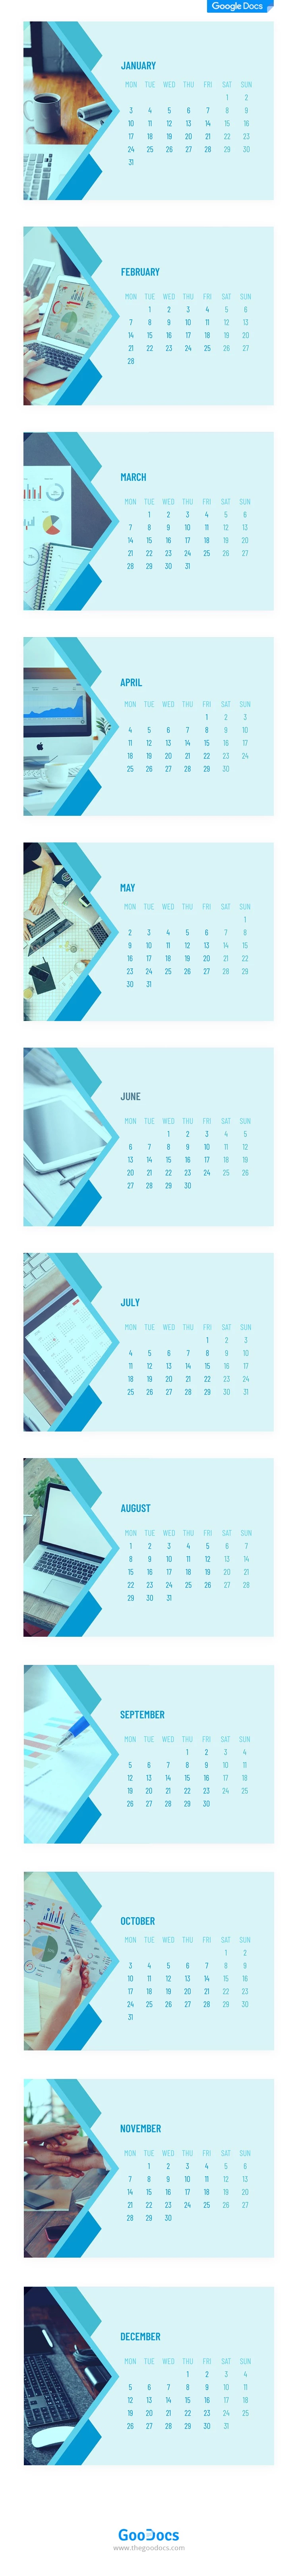 Calendario de escritorio empresarial imprimible - free Google Docs Template - 10062052